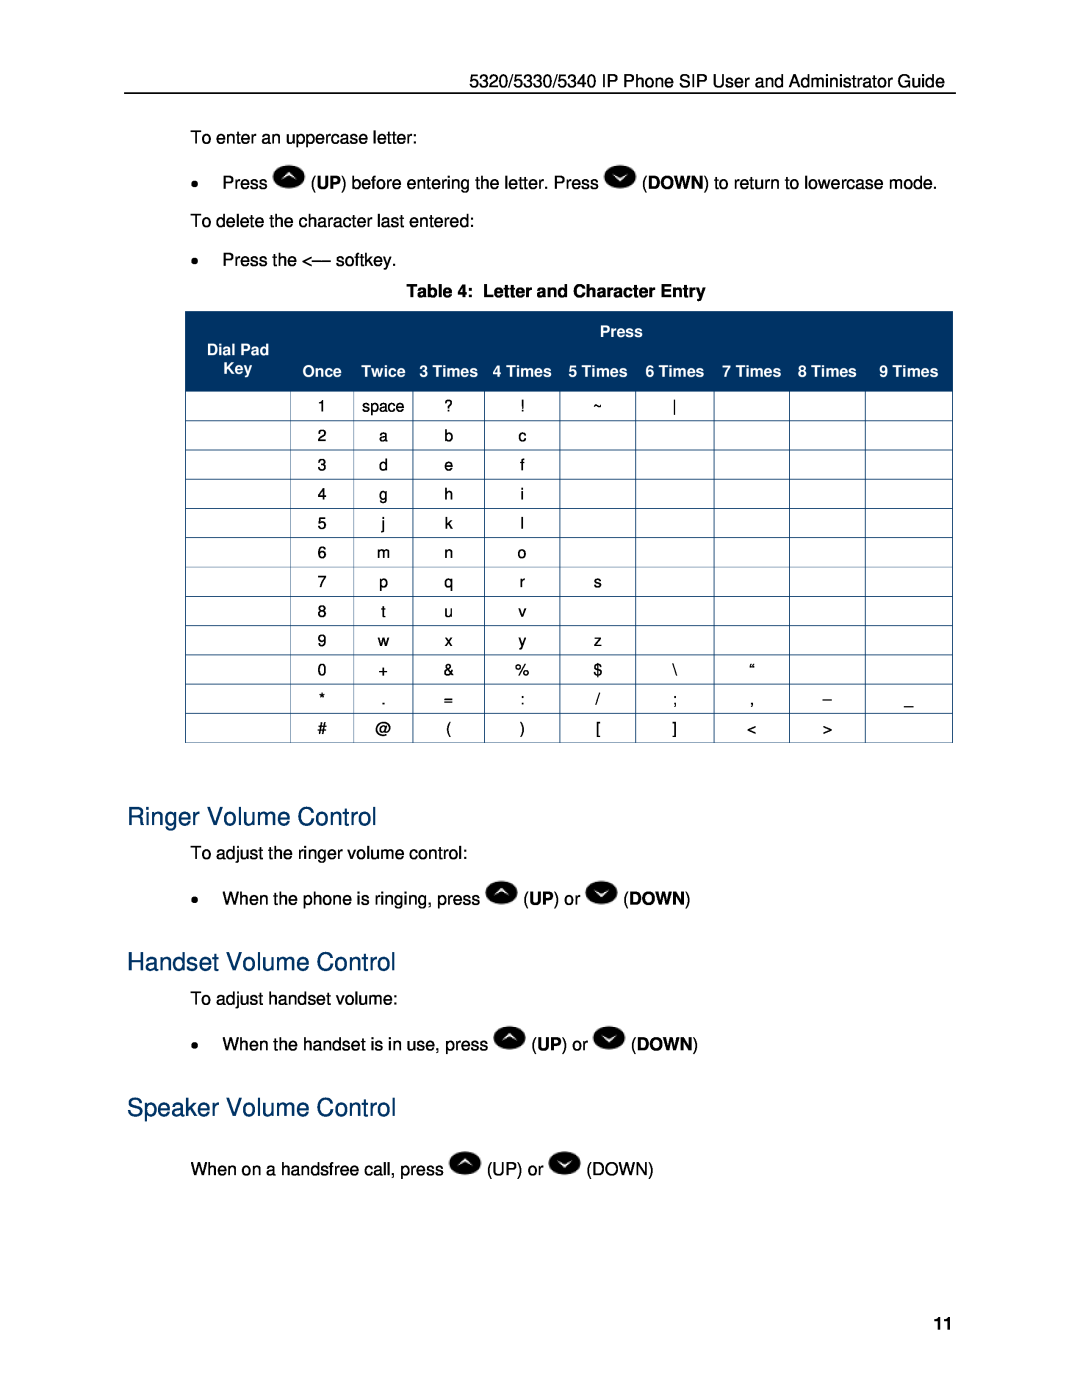 Mitel 5330, 5340 manual Ringer Volume Control, Handset Volume Control, Speaker Volume Control, Letter and Character Entry 